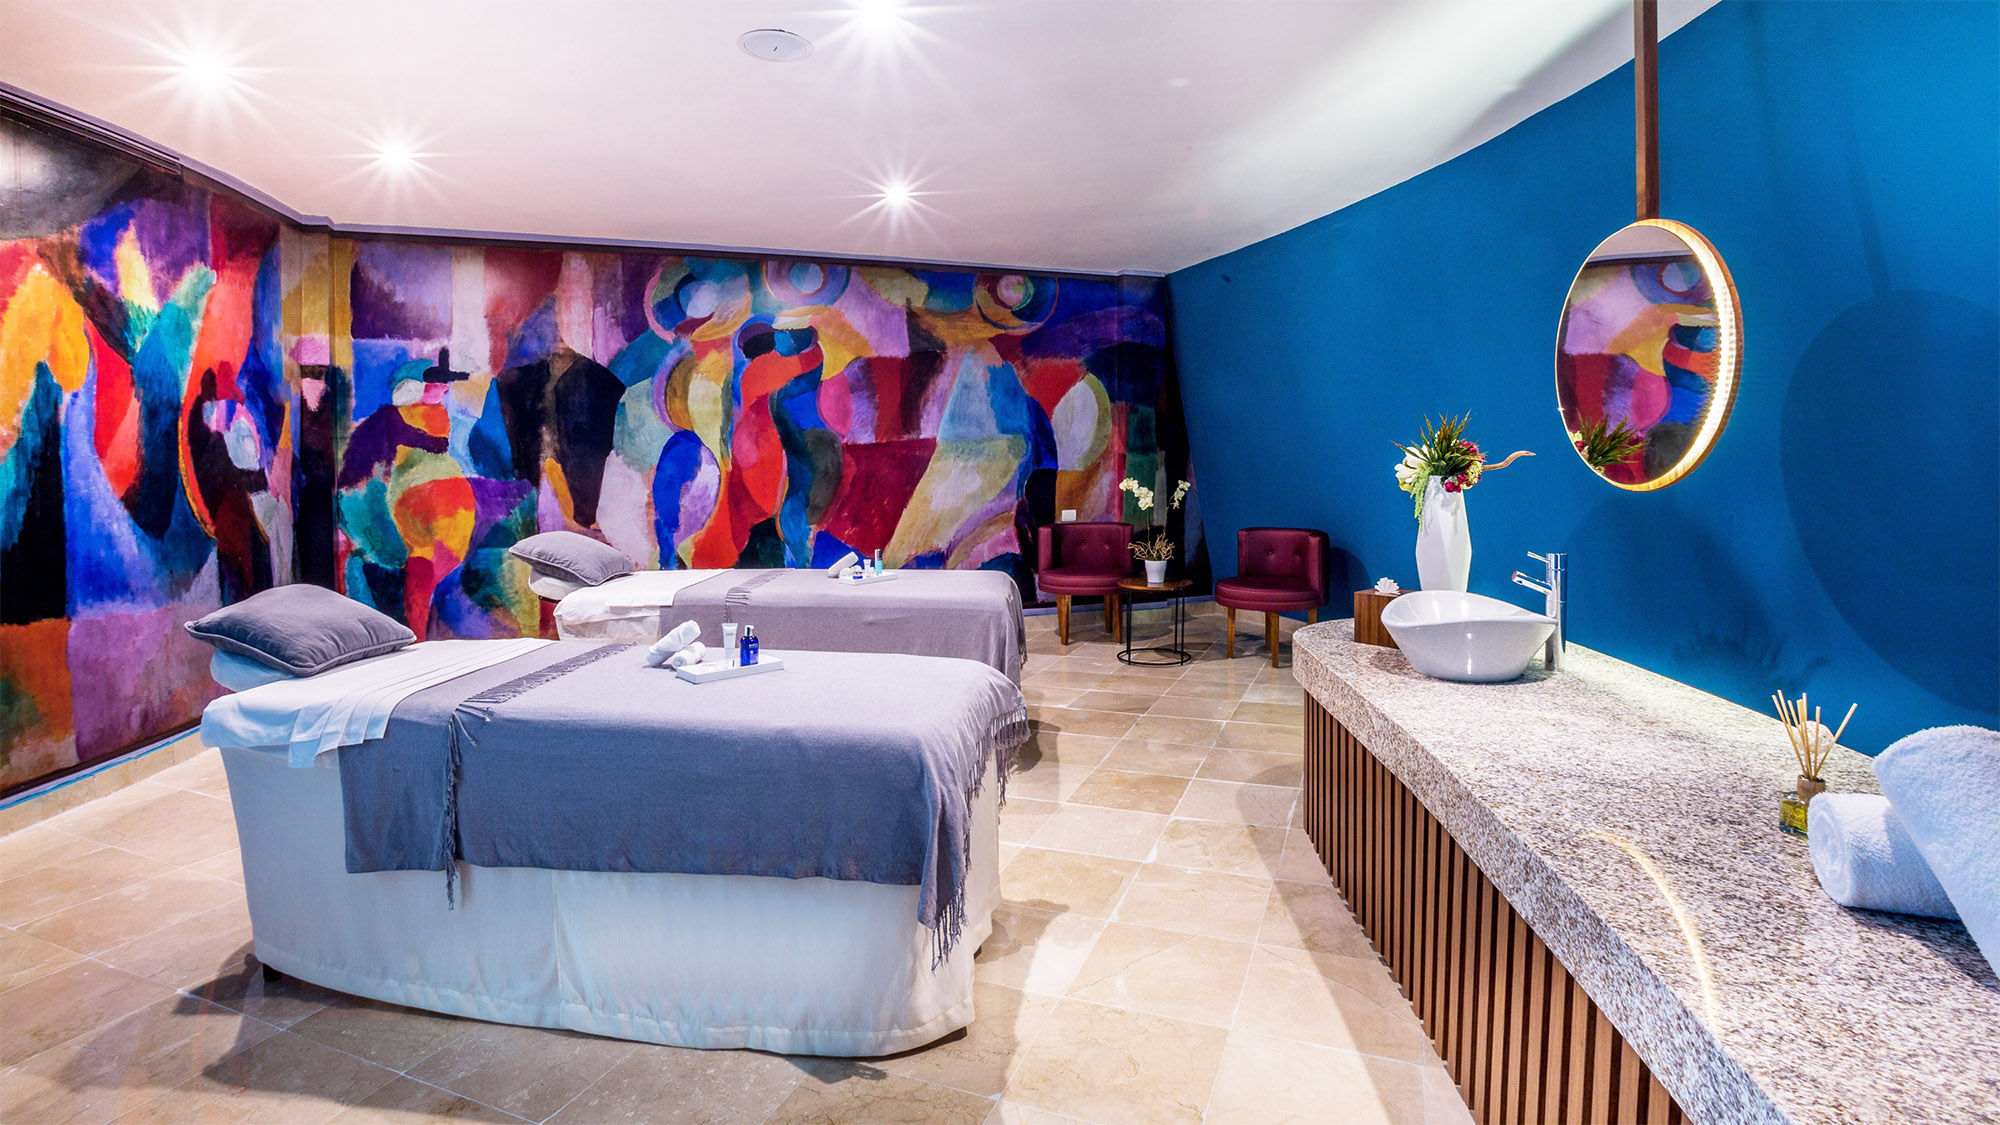 The Inspiration Spa & Gallery at the Sensira Resort & Spa Riviera Maya